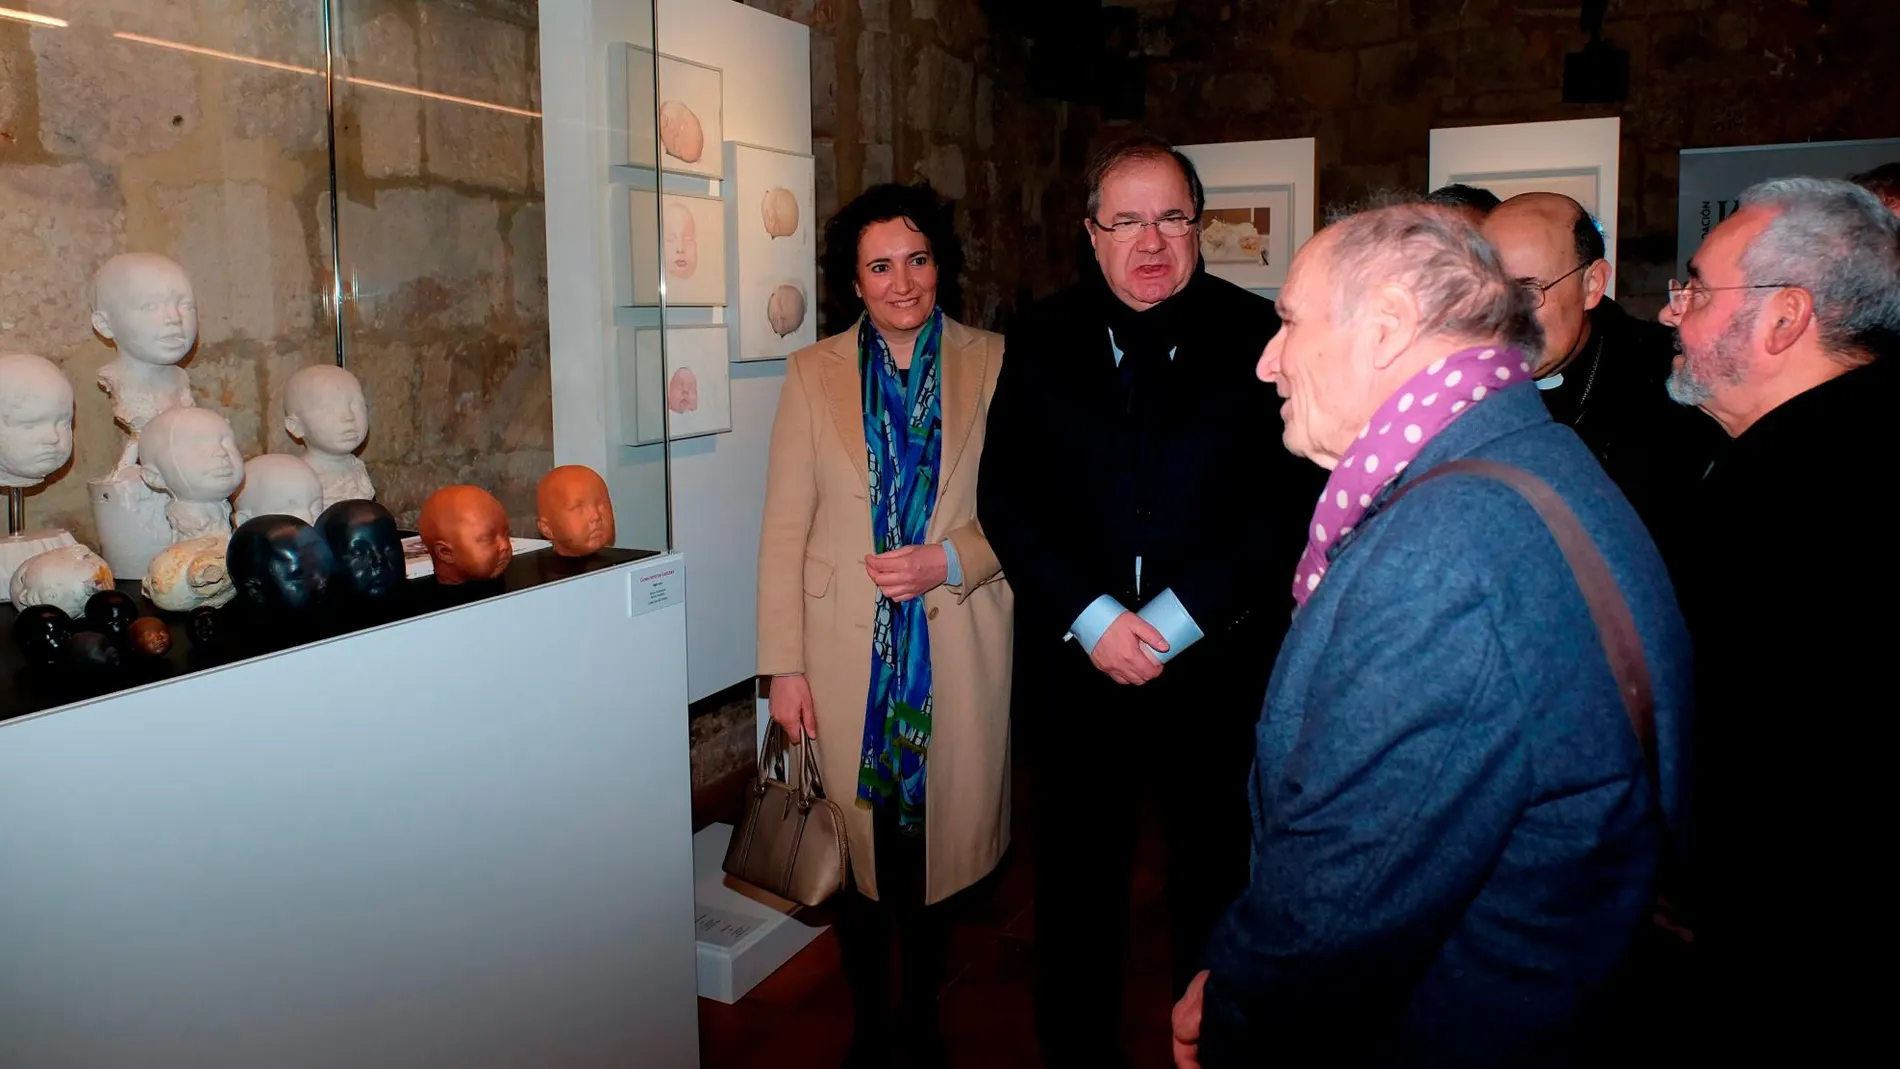 Herrera visita la exposición de Antonio López en Silos junto al propio artista, la consejera García-Cirac y Gonzalo Jiménez, entre otros